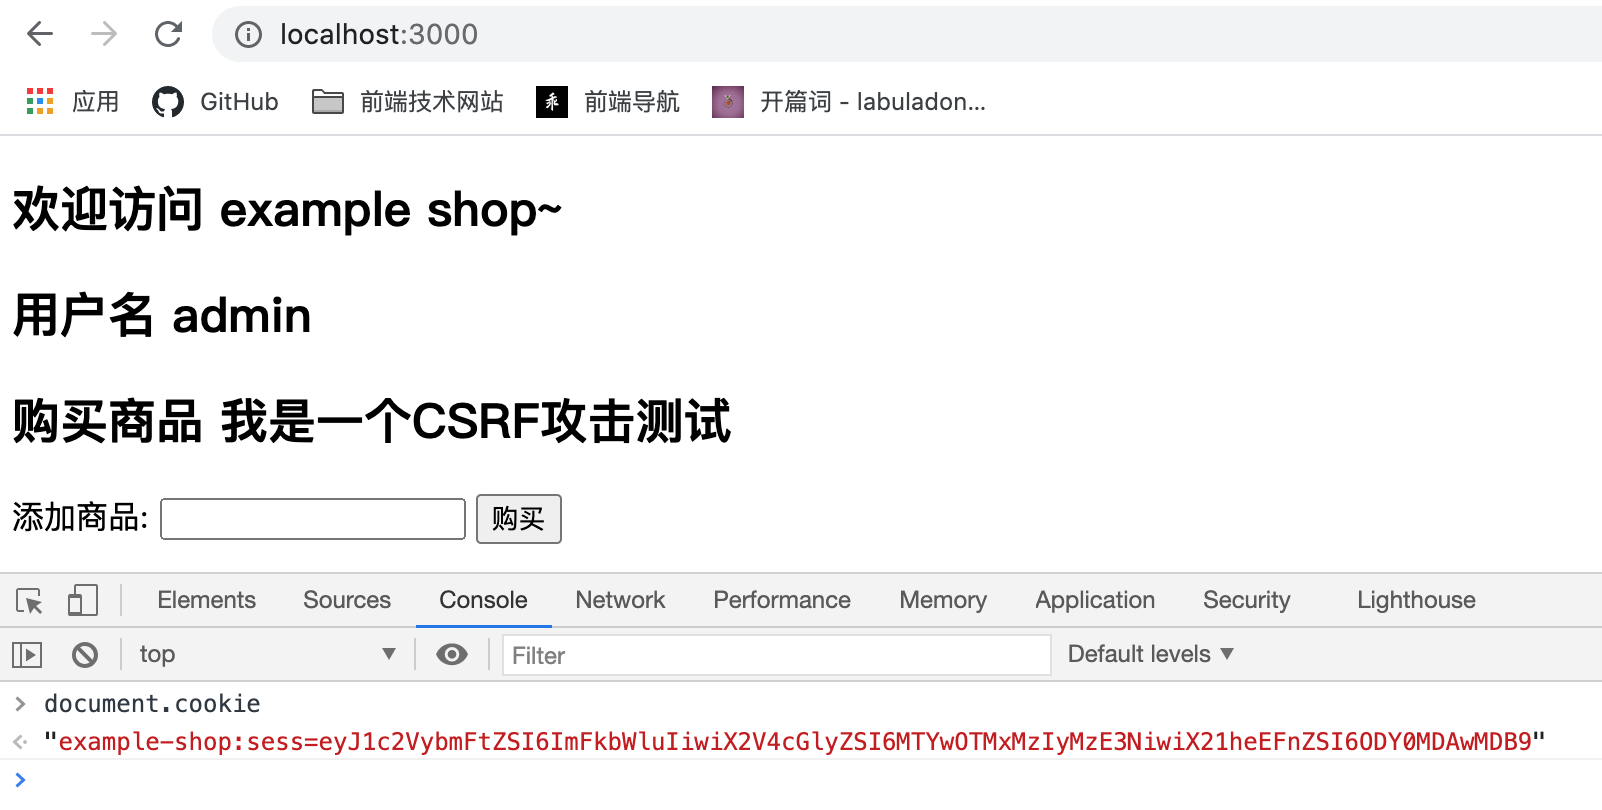 CSRF-模拟用户登录